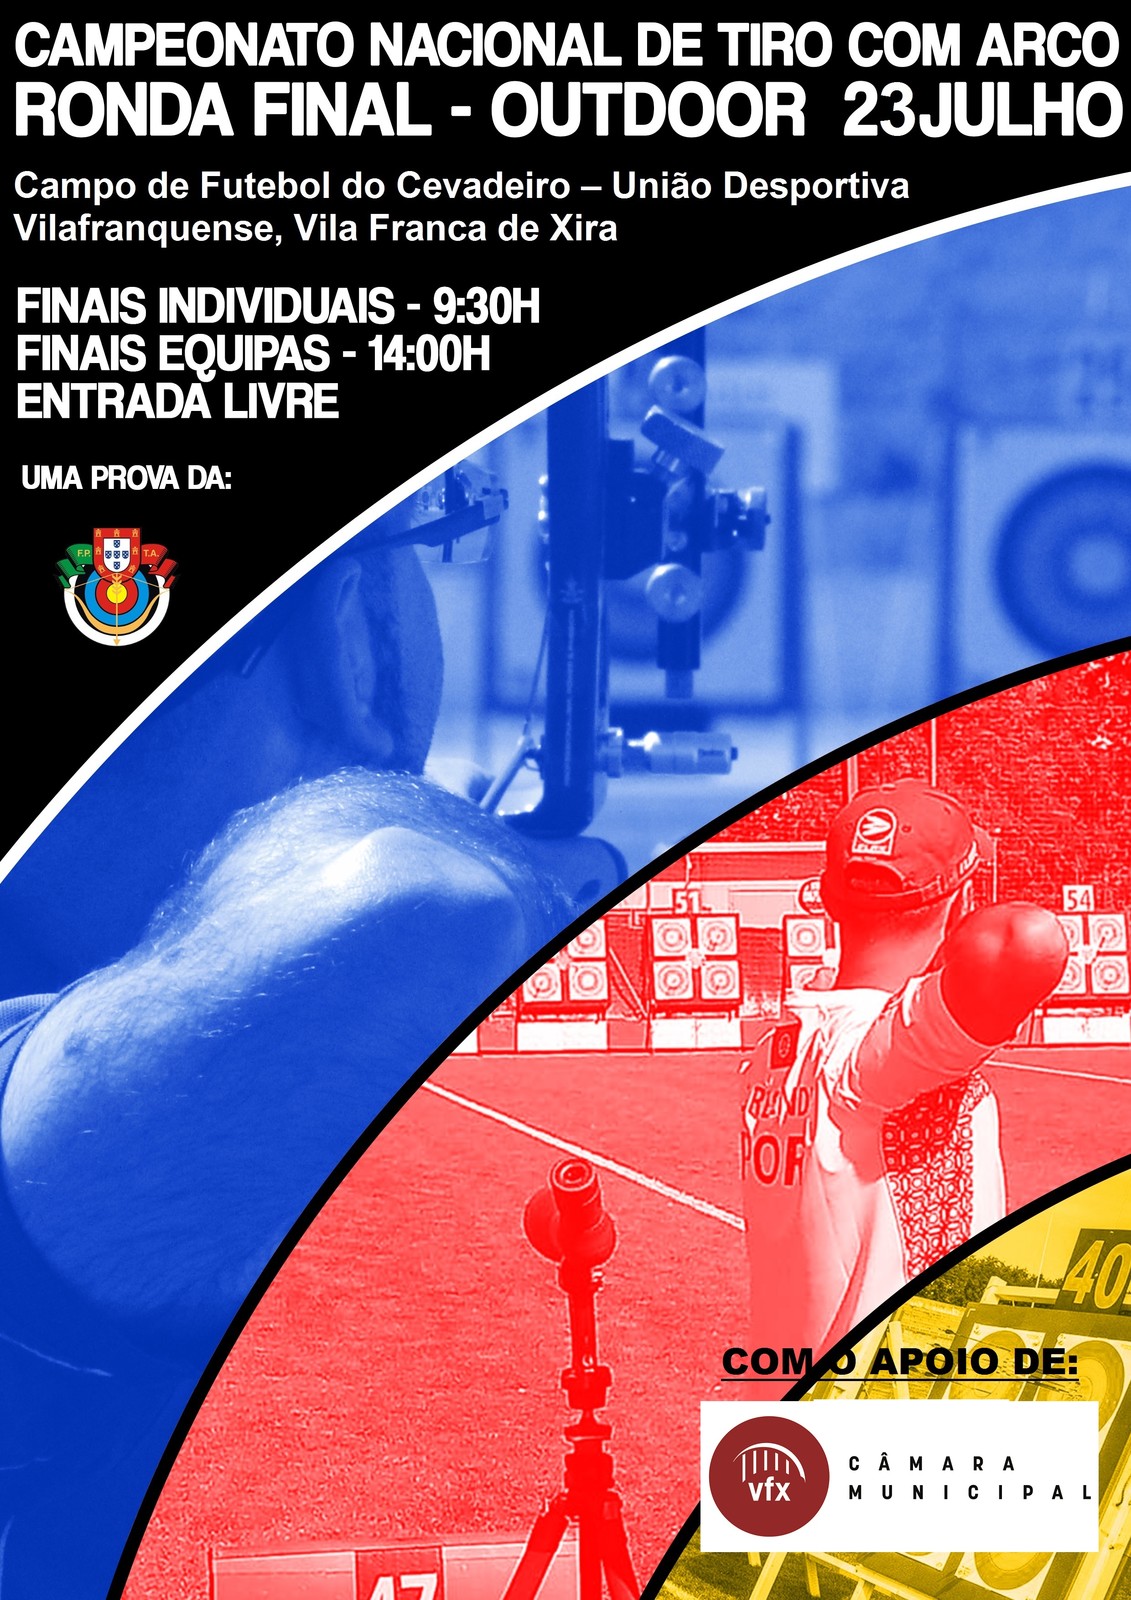 Vila Franca de Xira recebe Final do Campeonato Nacional de Tiro com Arco